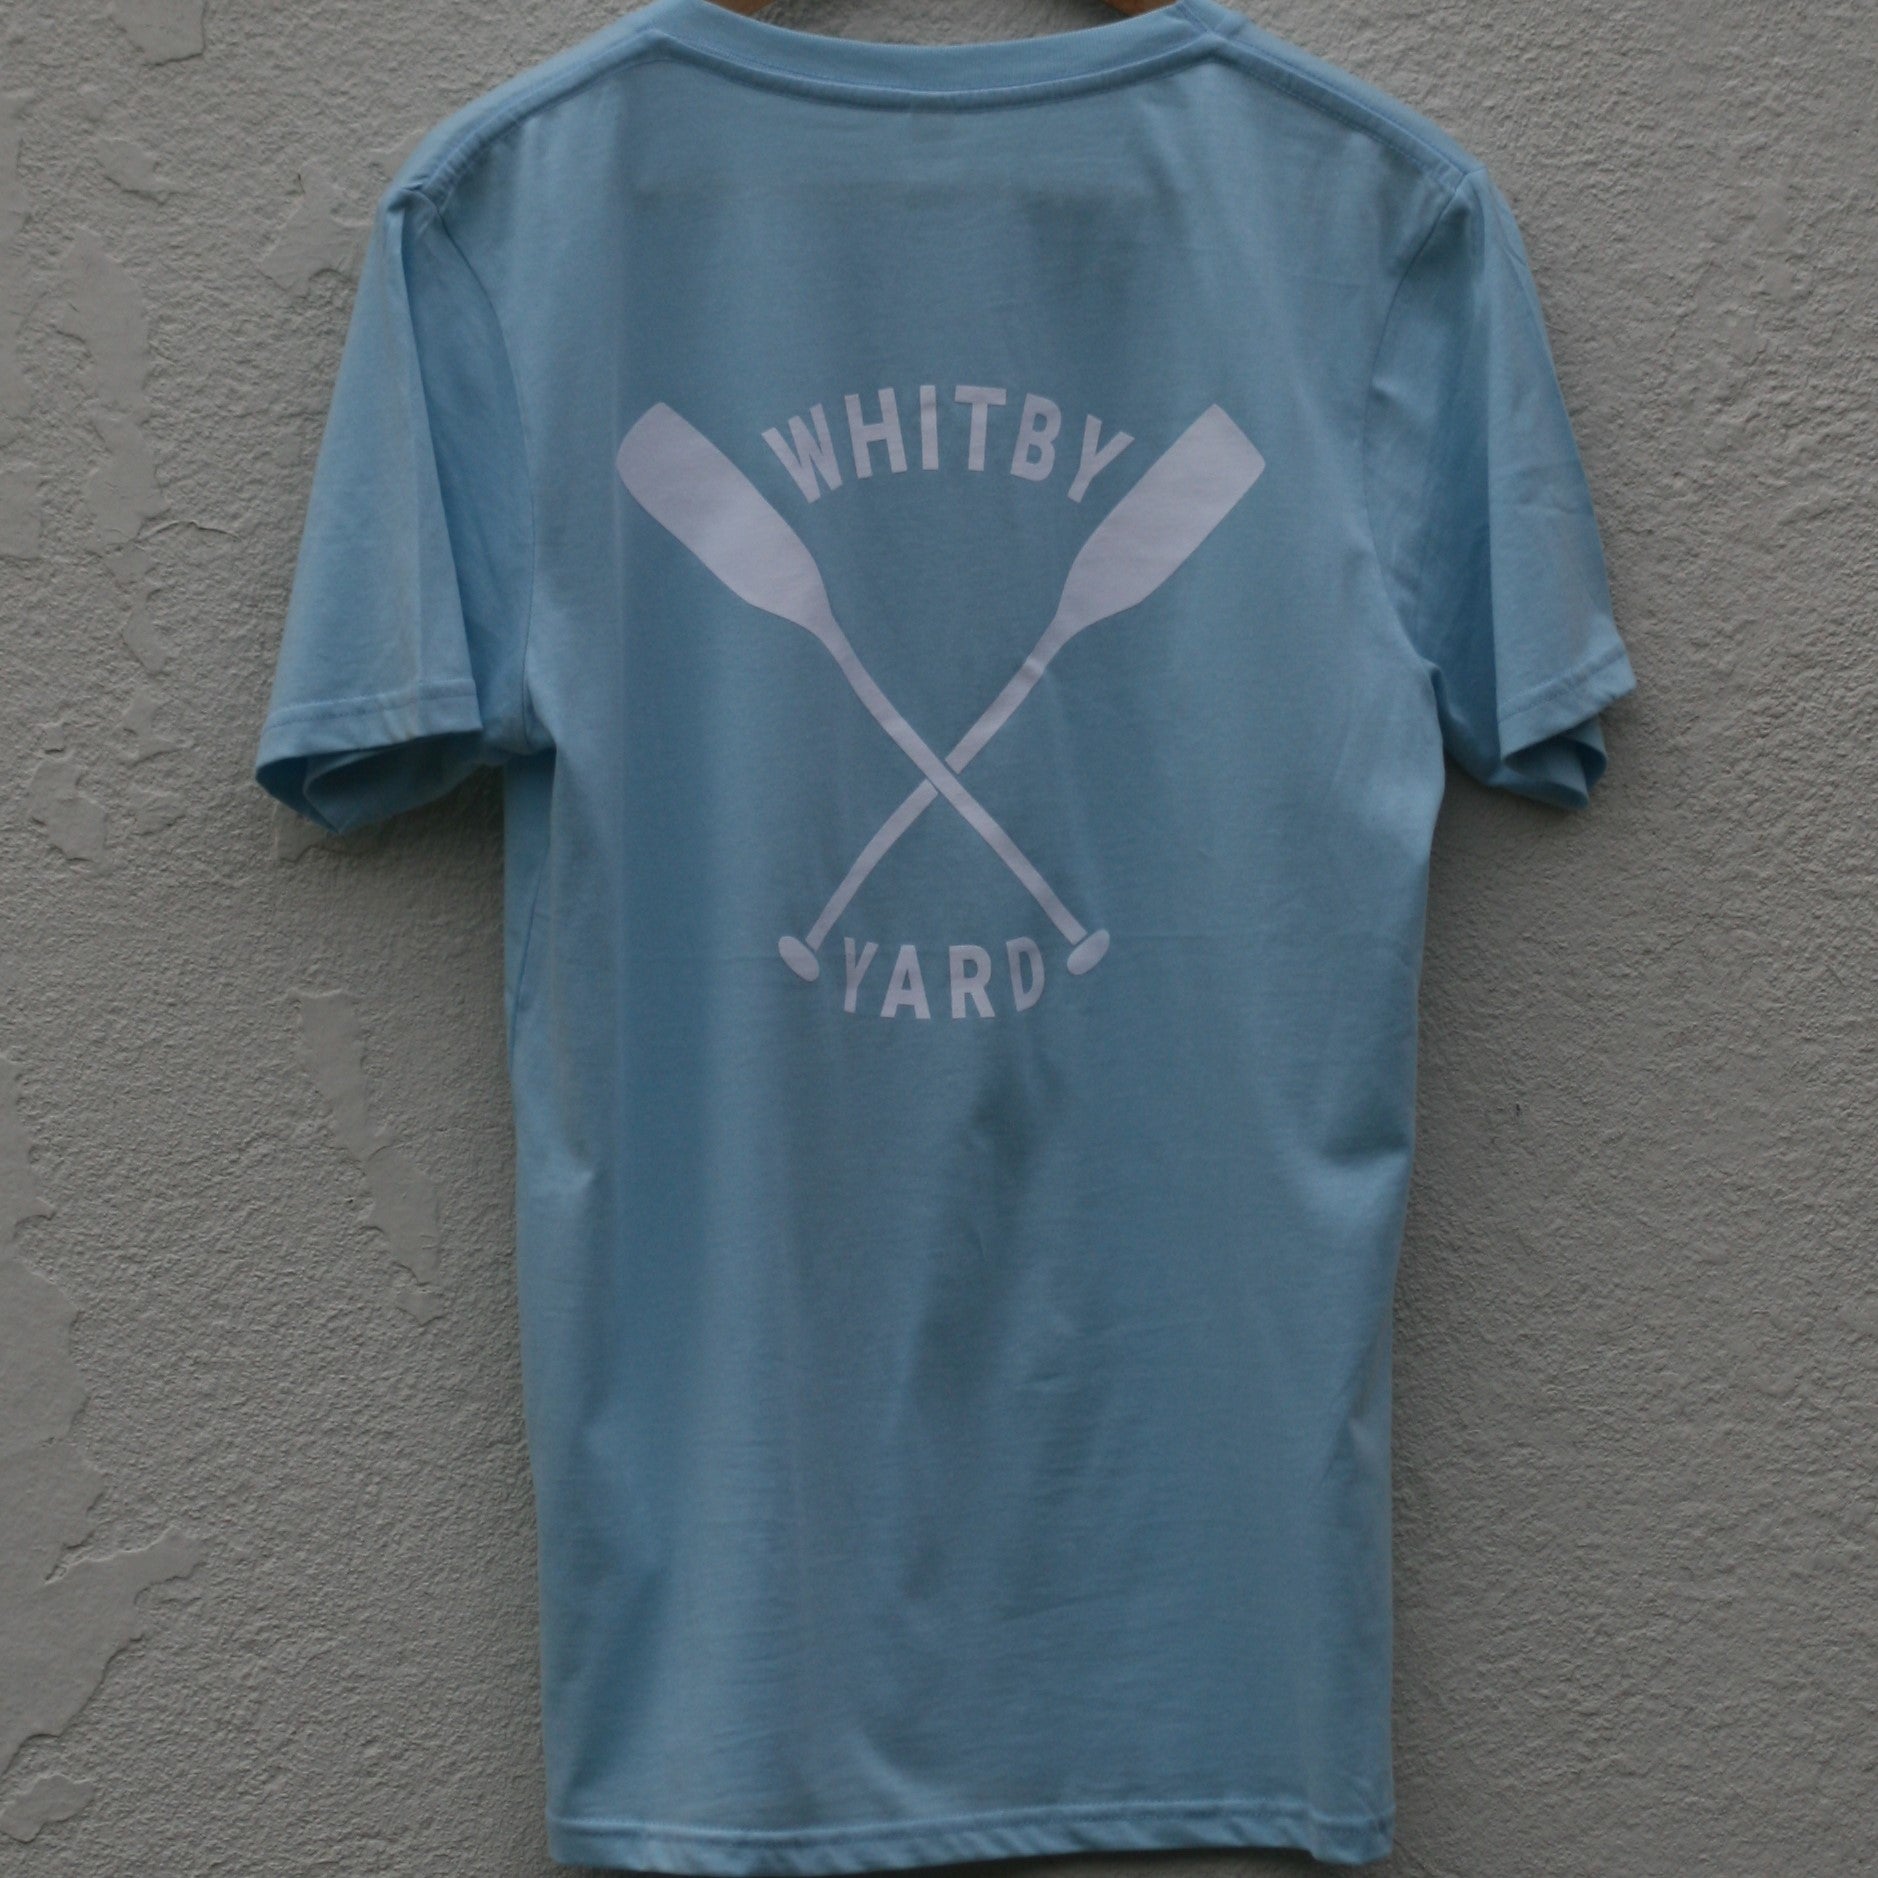 Unisex Oars T shirt in Light Blue